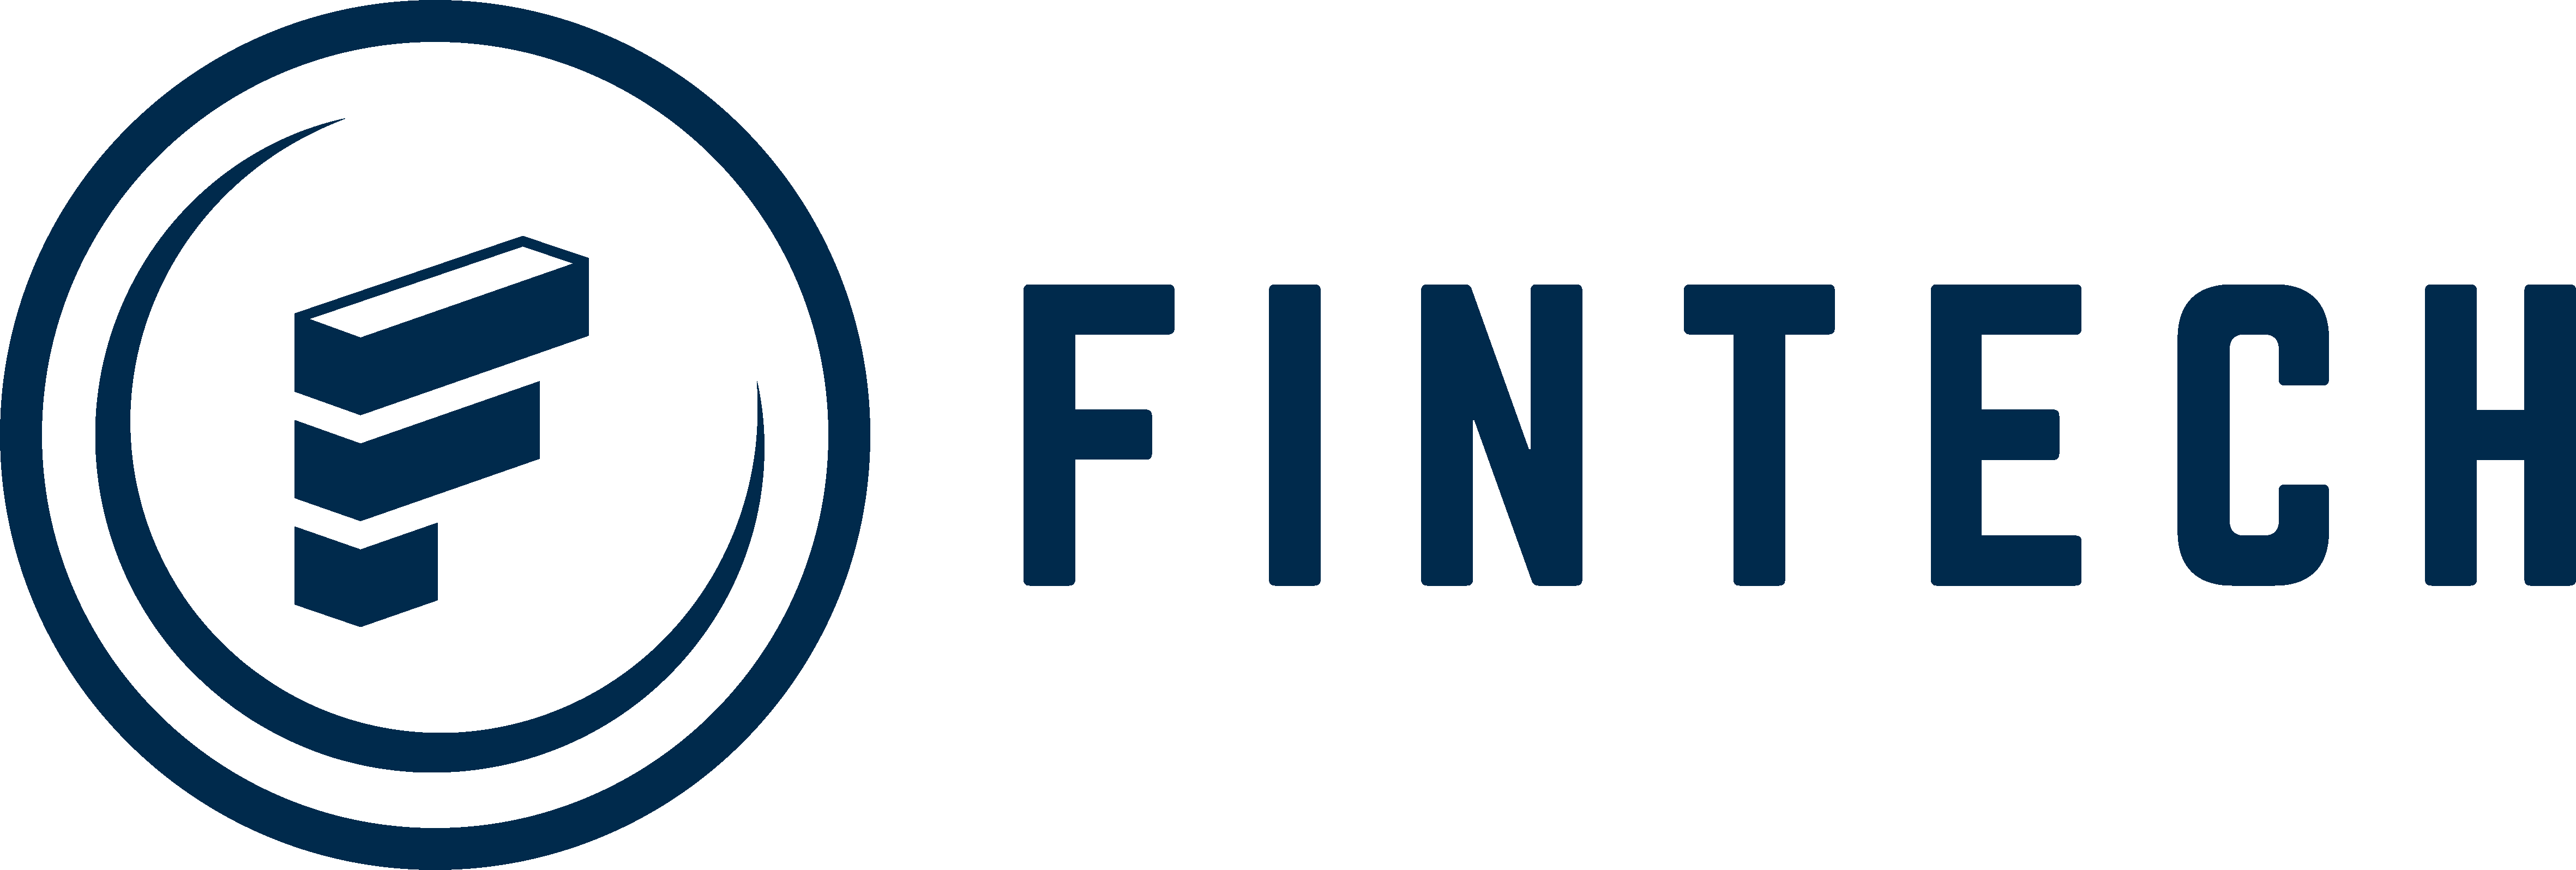 Financial Information Technologies (fintech)